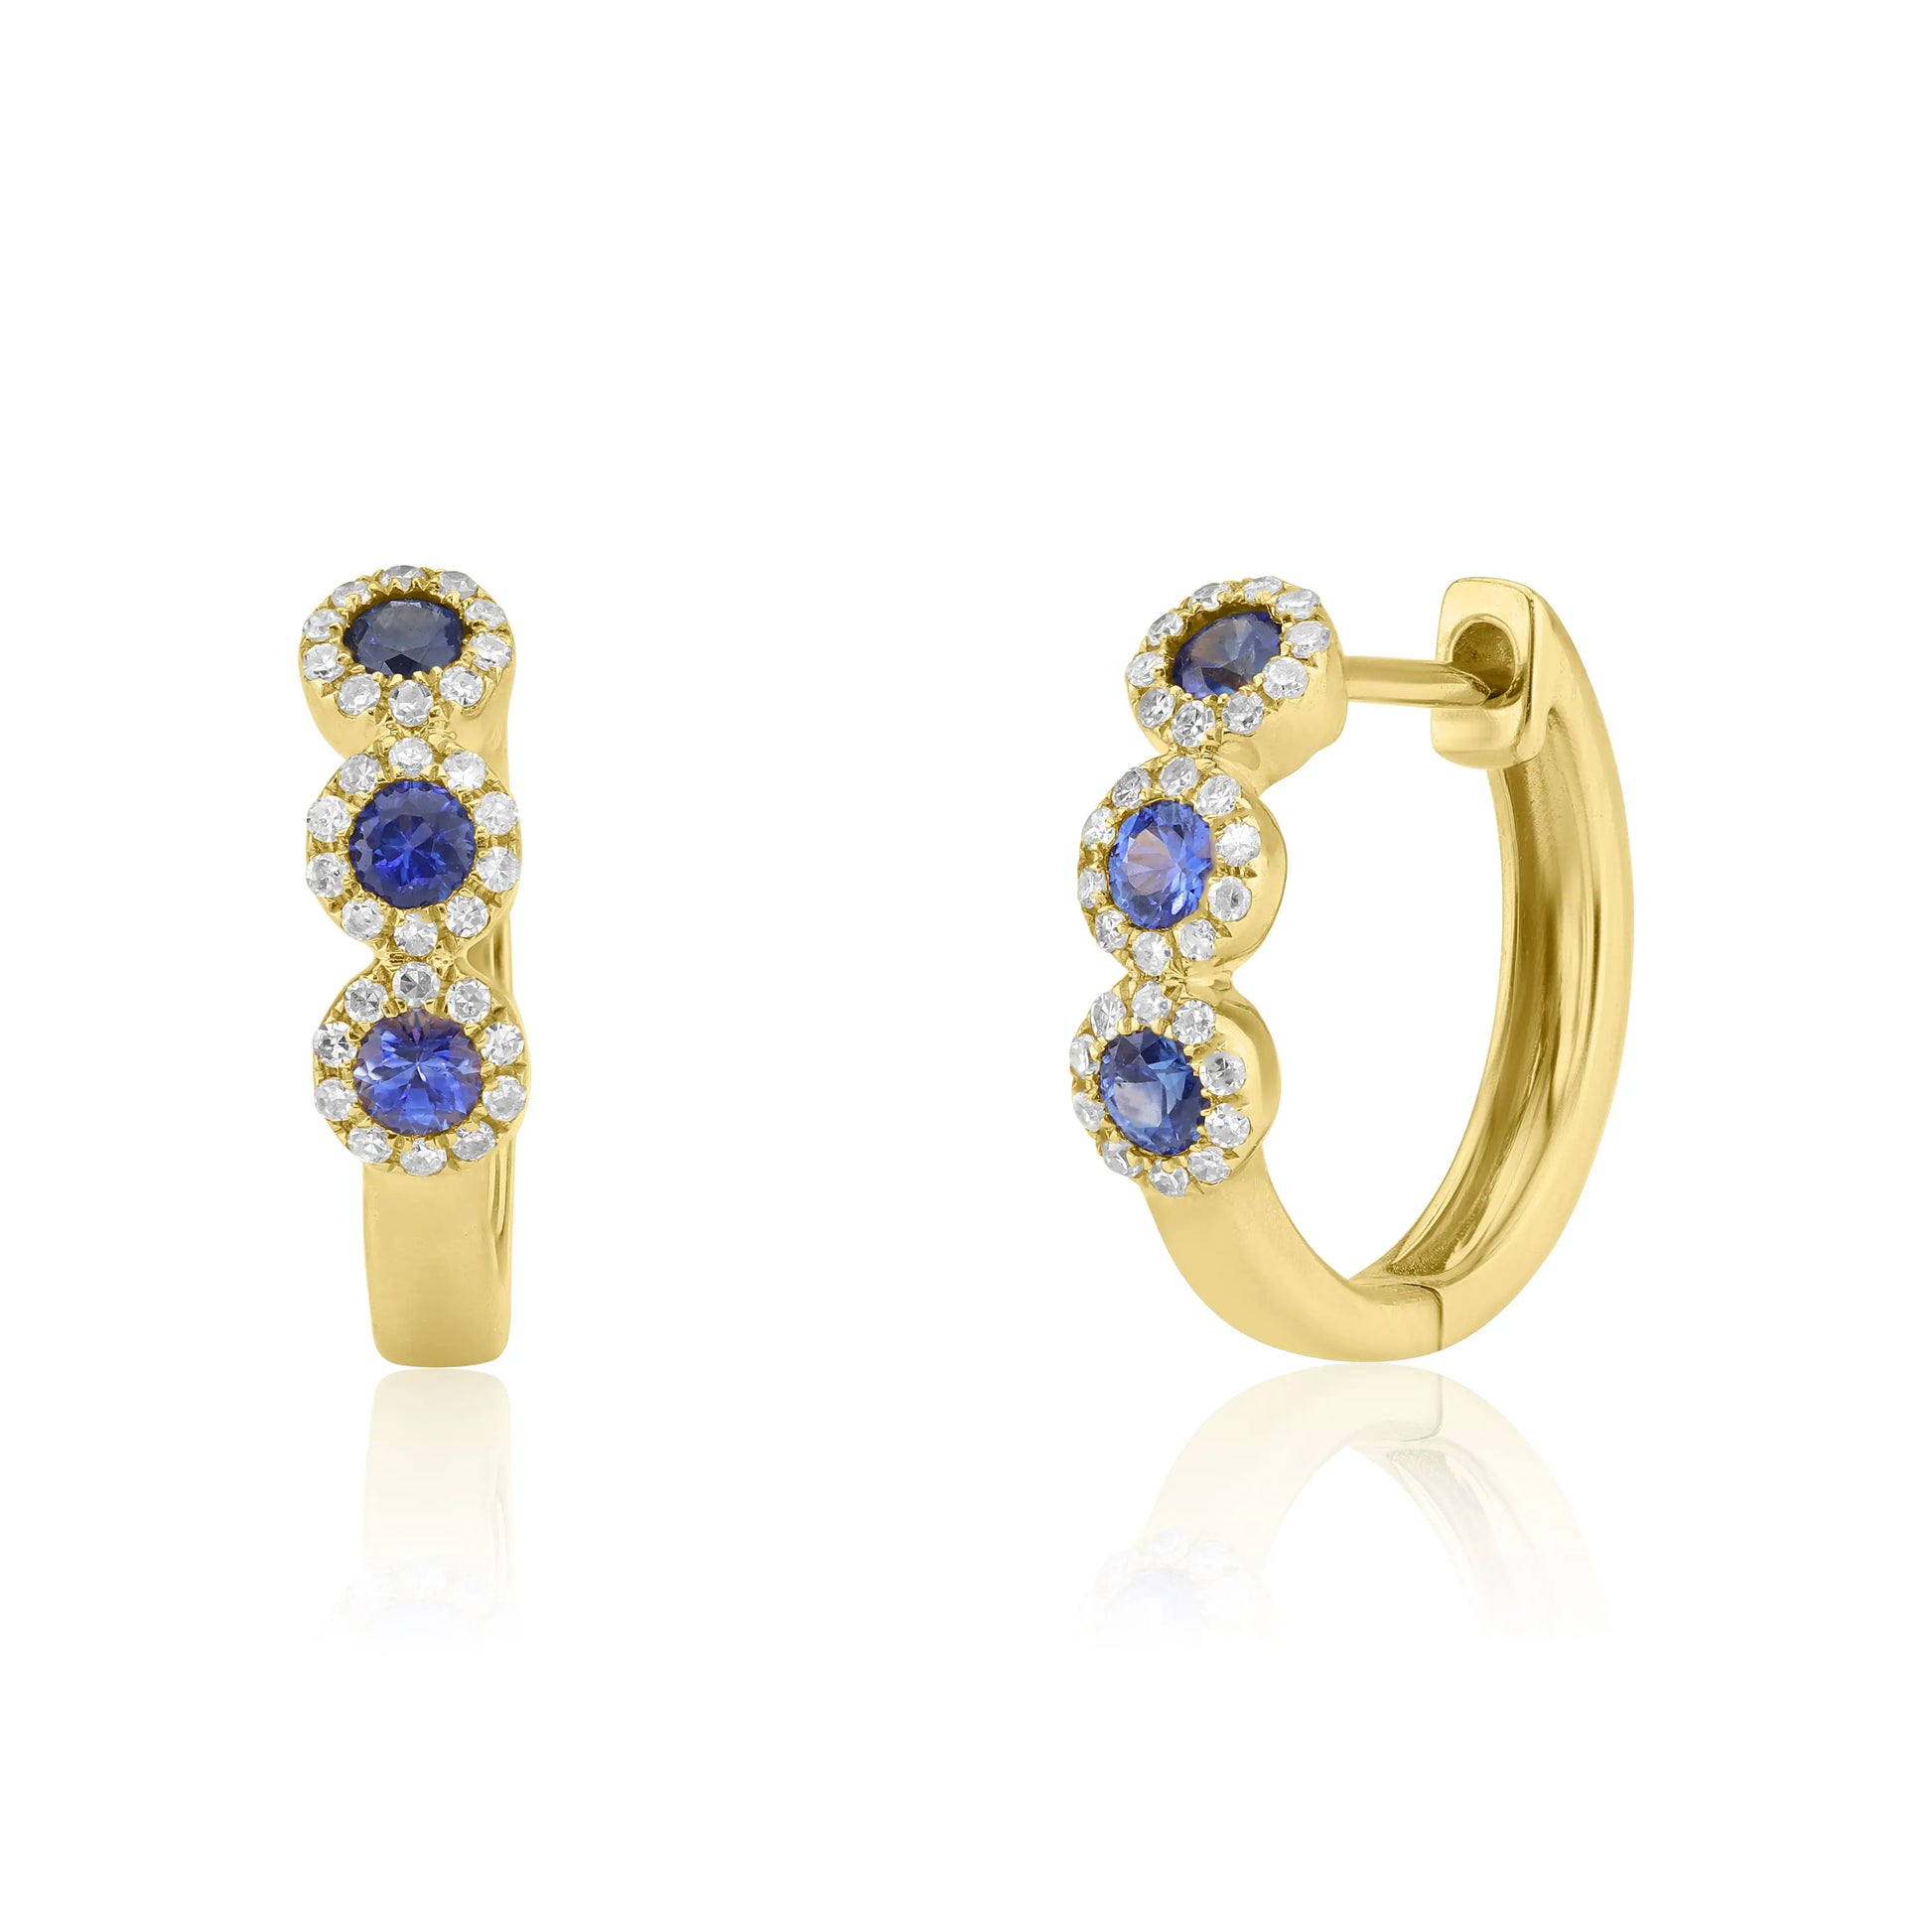 White Gold Earrings Sapphire & Diamond Halo Earrings dansonjewelers Danson Jewelers 